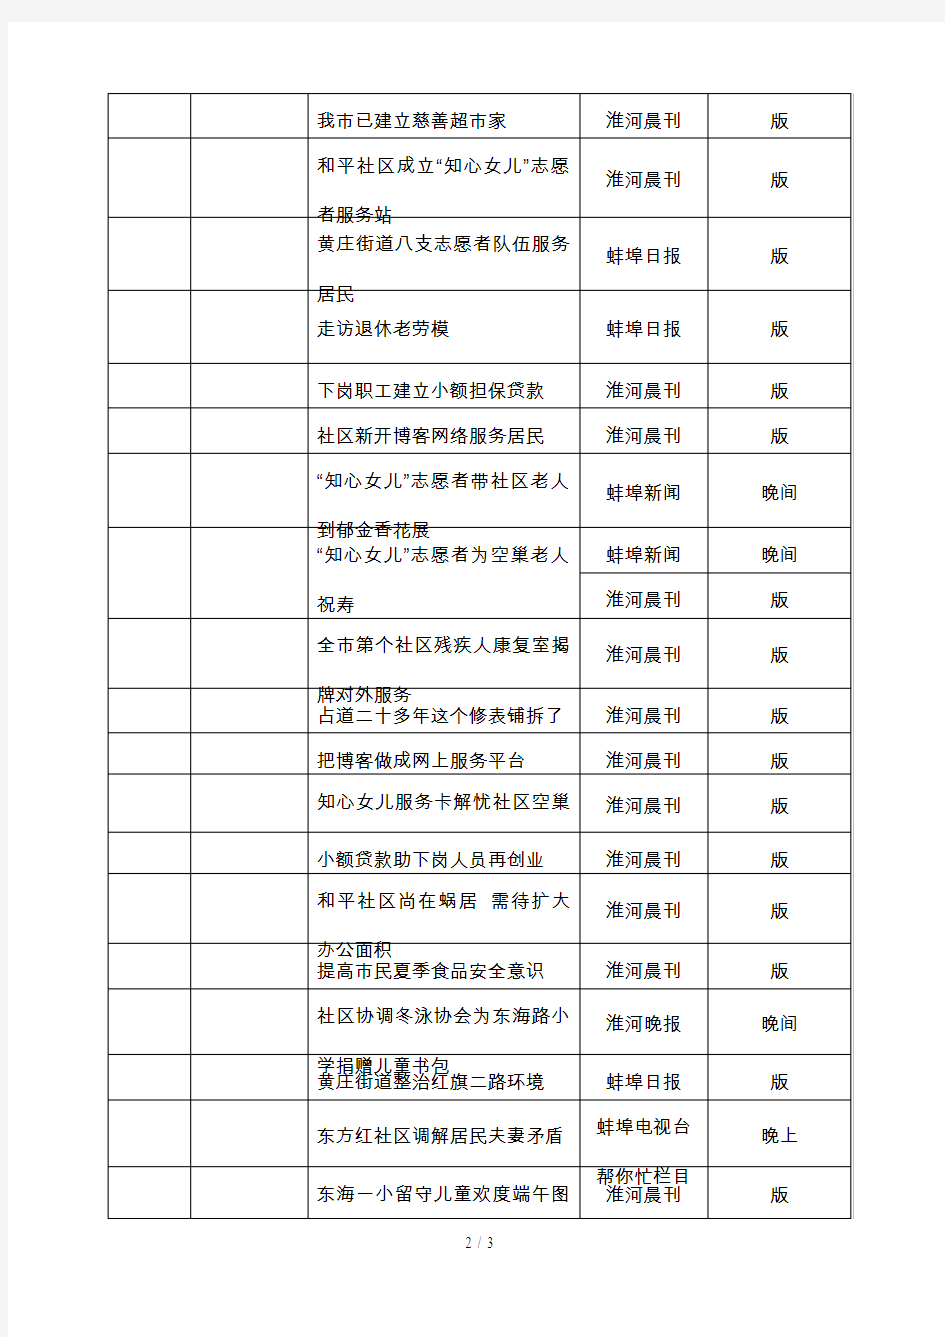 黄庄街道新闻宣传报道统计表